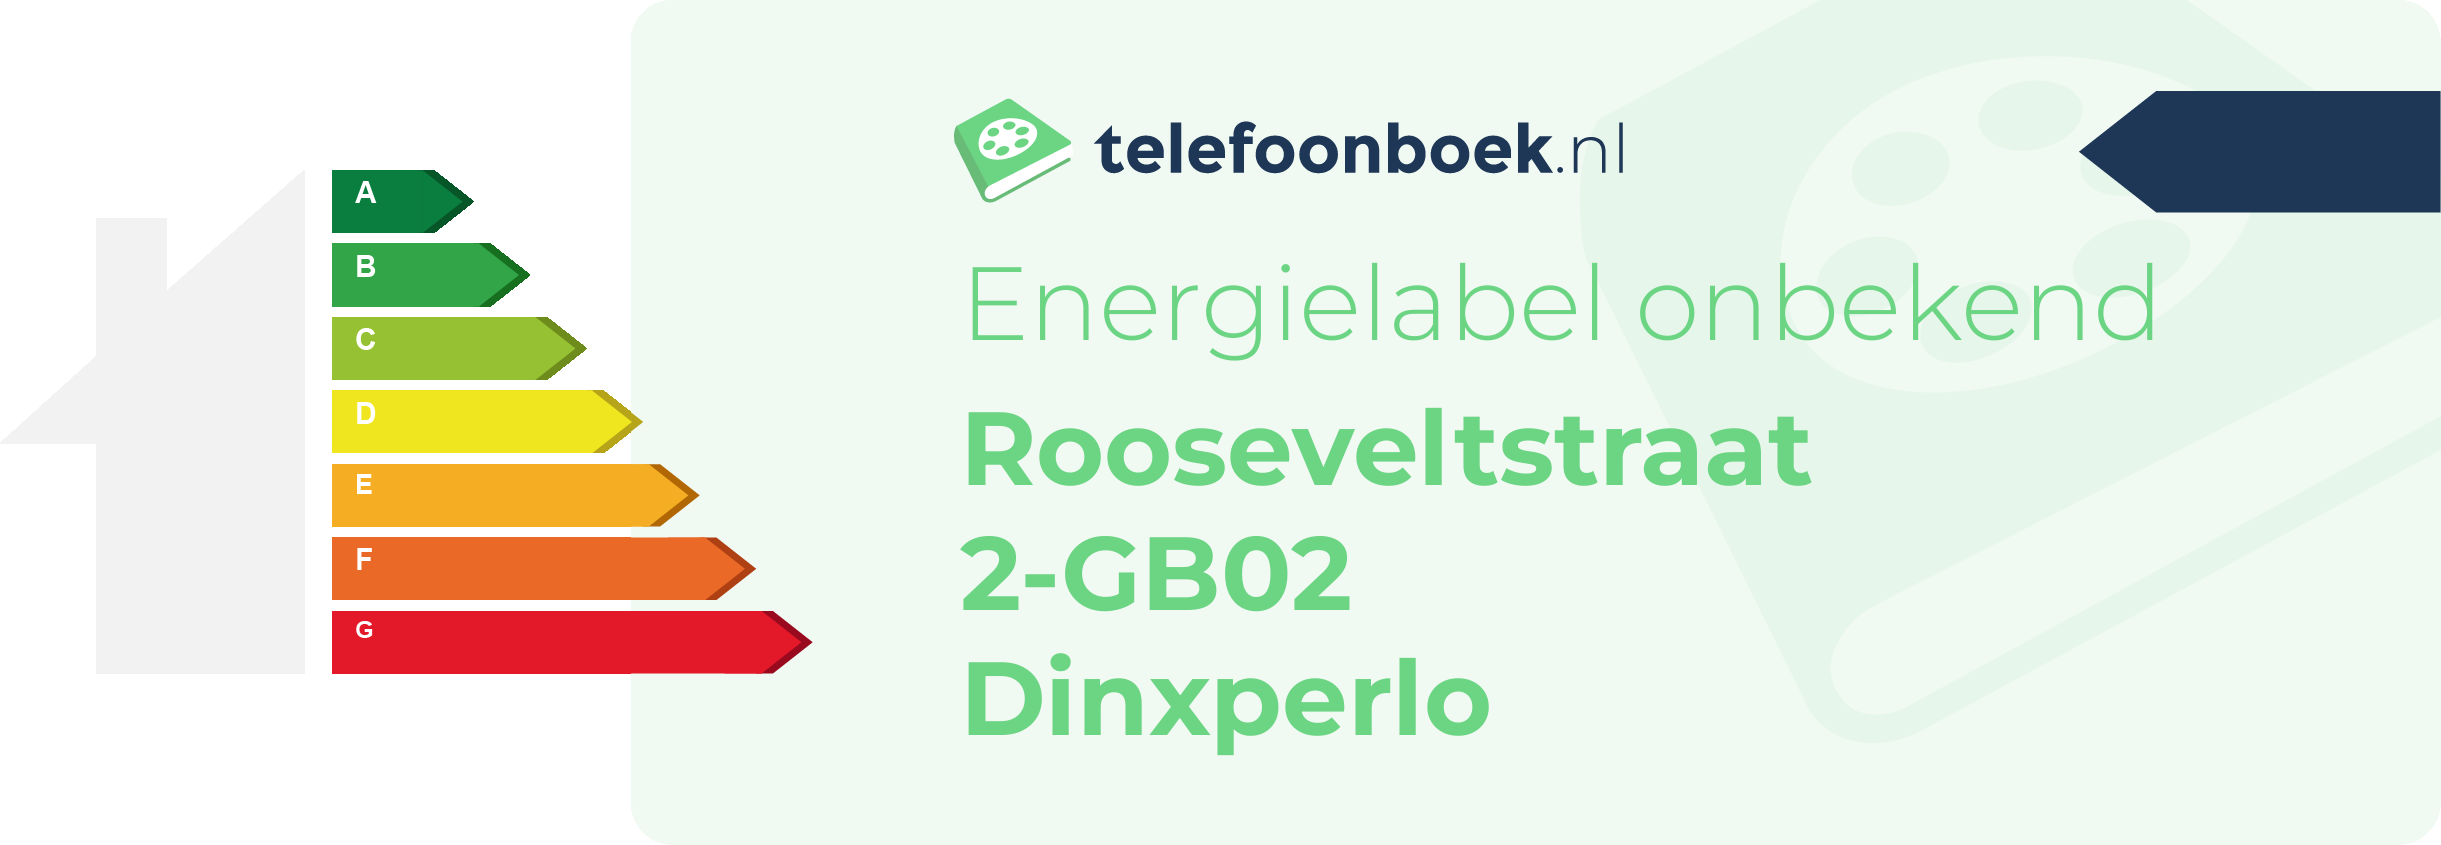 Energielabel Rooseveltstraat 2-GB02 Dinxperlo